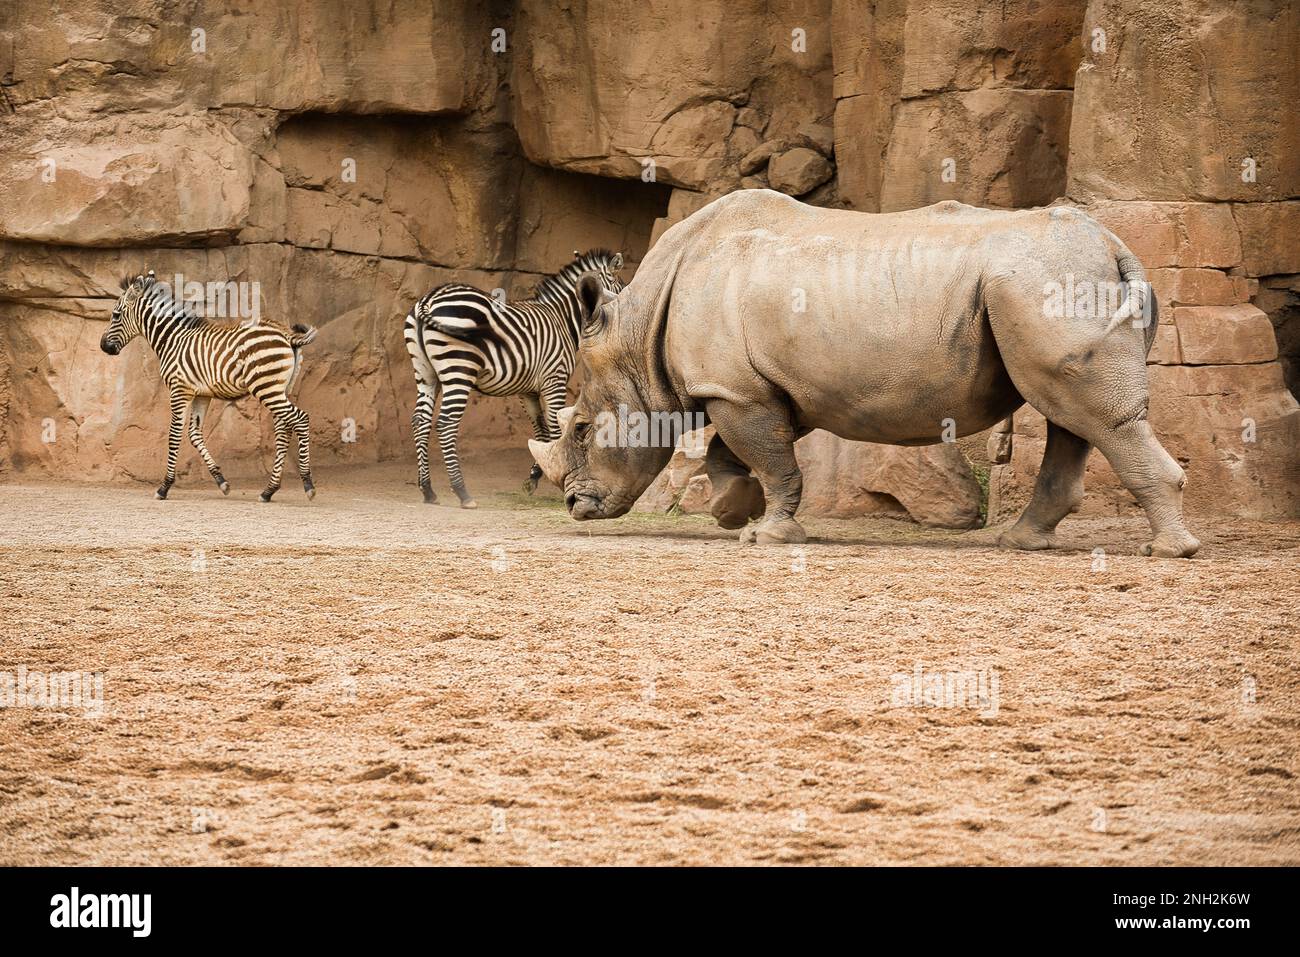 Tiro de larga distancia de un rinoceronte con dos bebés de cebra en el fondo en un paisaje rocoso. Foto de stock